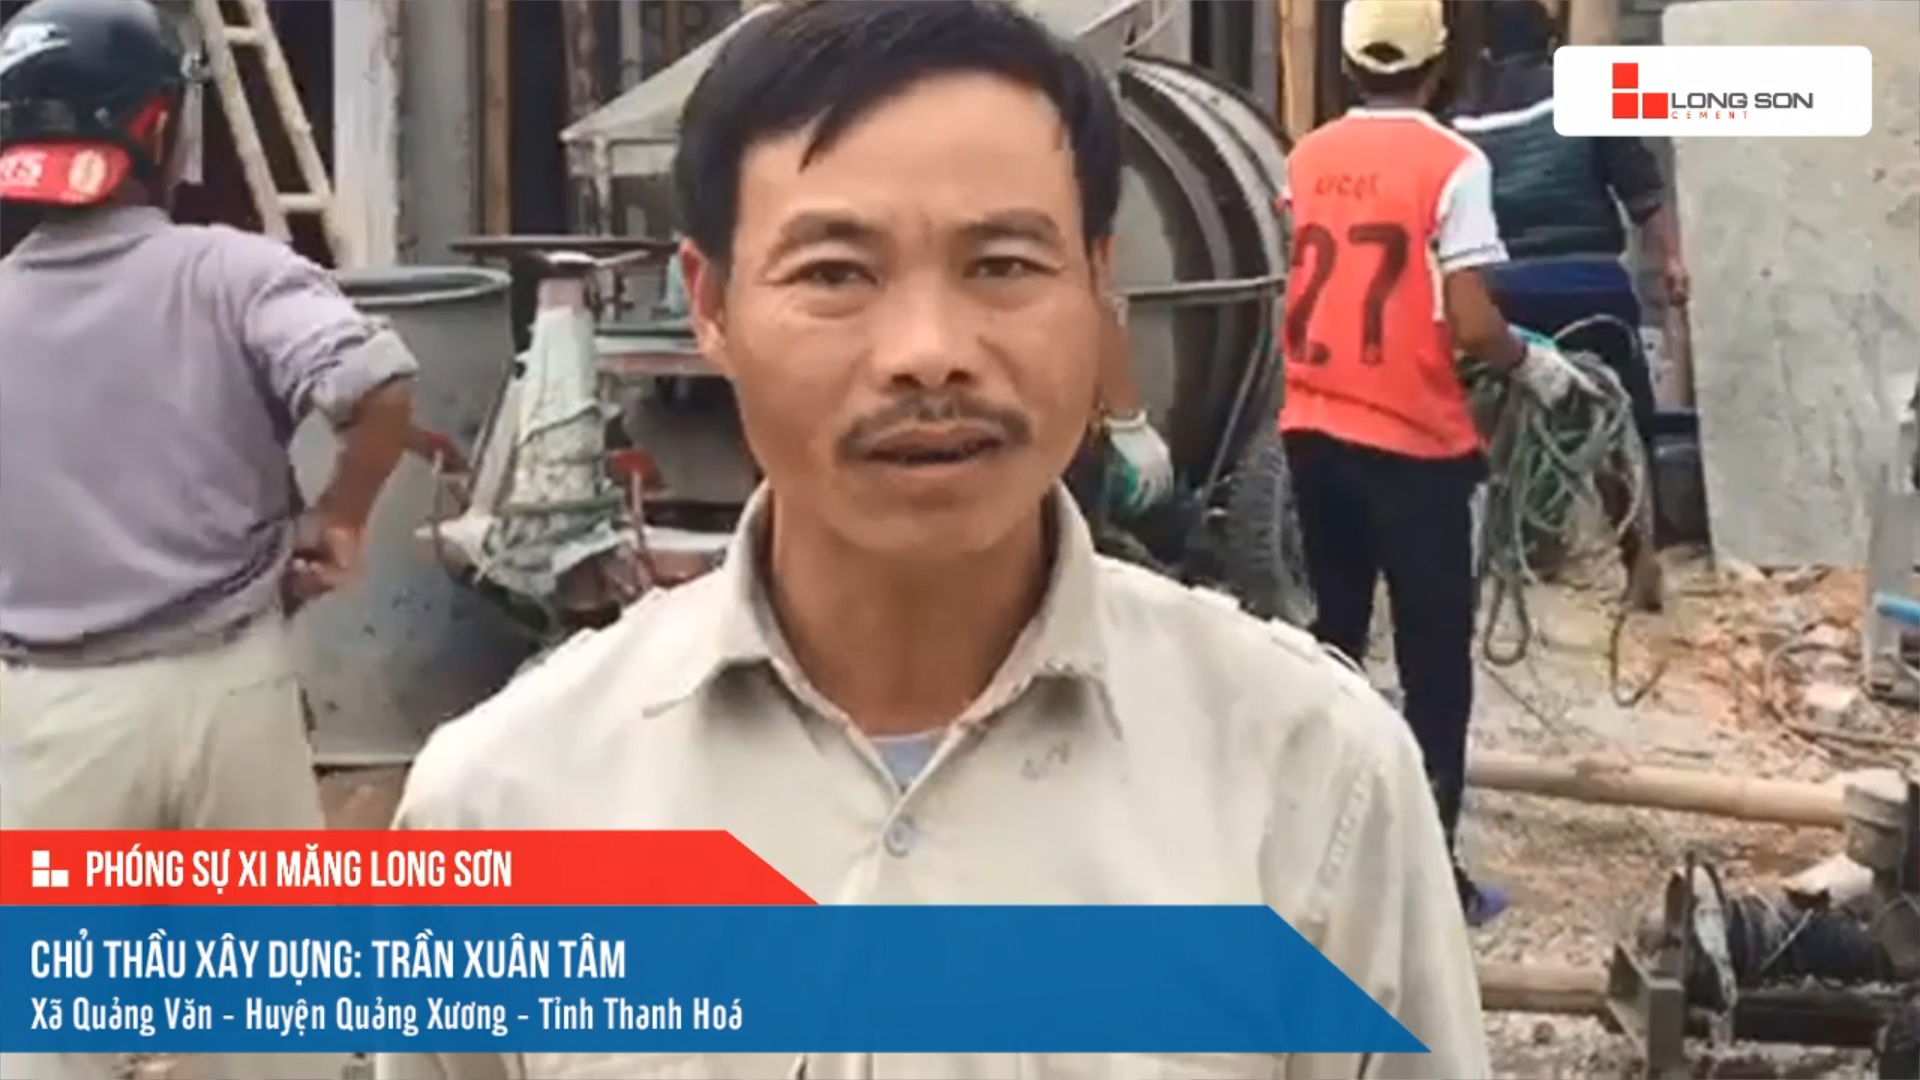 Phóng sự công trình sử dụng xi măng Long Sơn tại Thanh Hóa ngày 18/01/2022